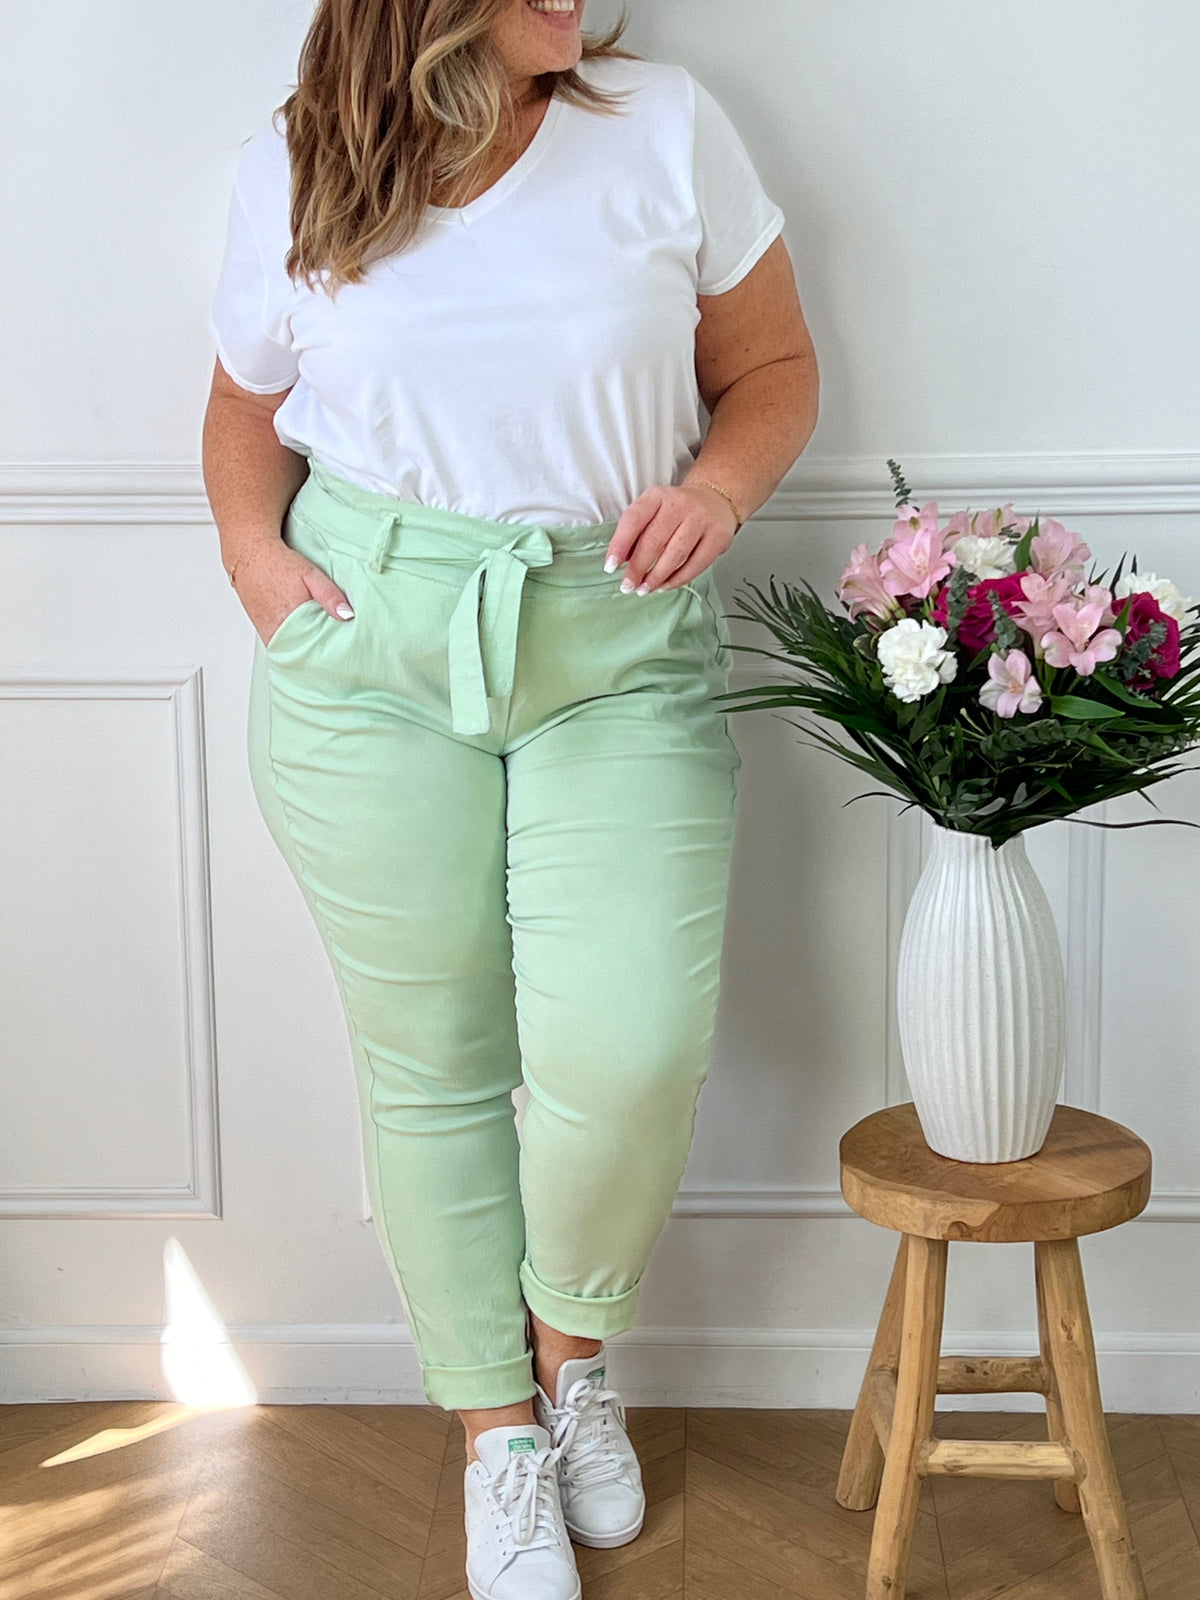 Le pantalon vert menthe, le basic à avoir ! Si vous souhaitez marquer votre taille, vous pouvez également rentrer le haut dans le pantalon.